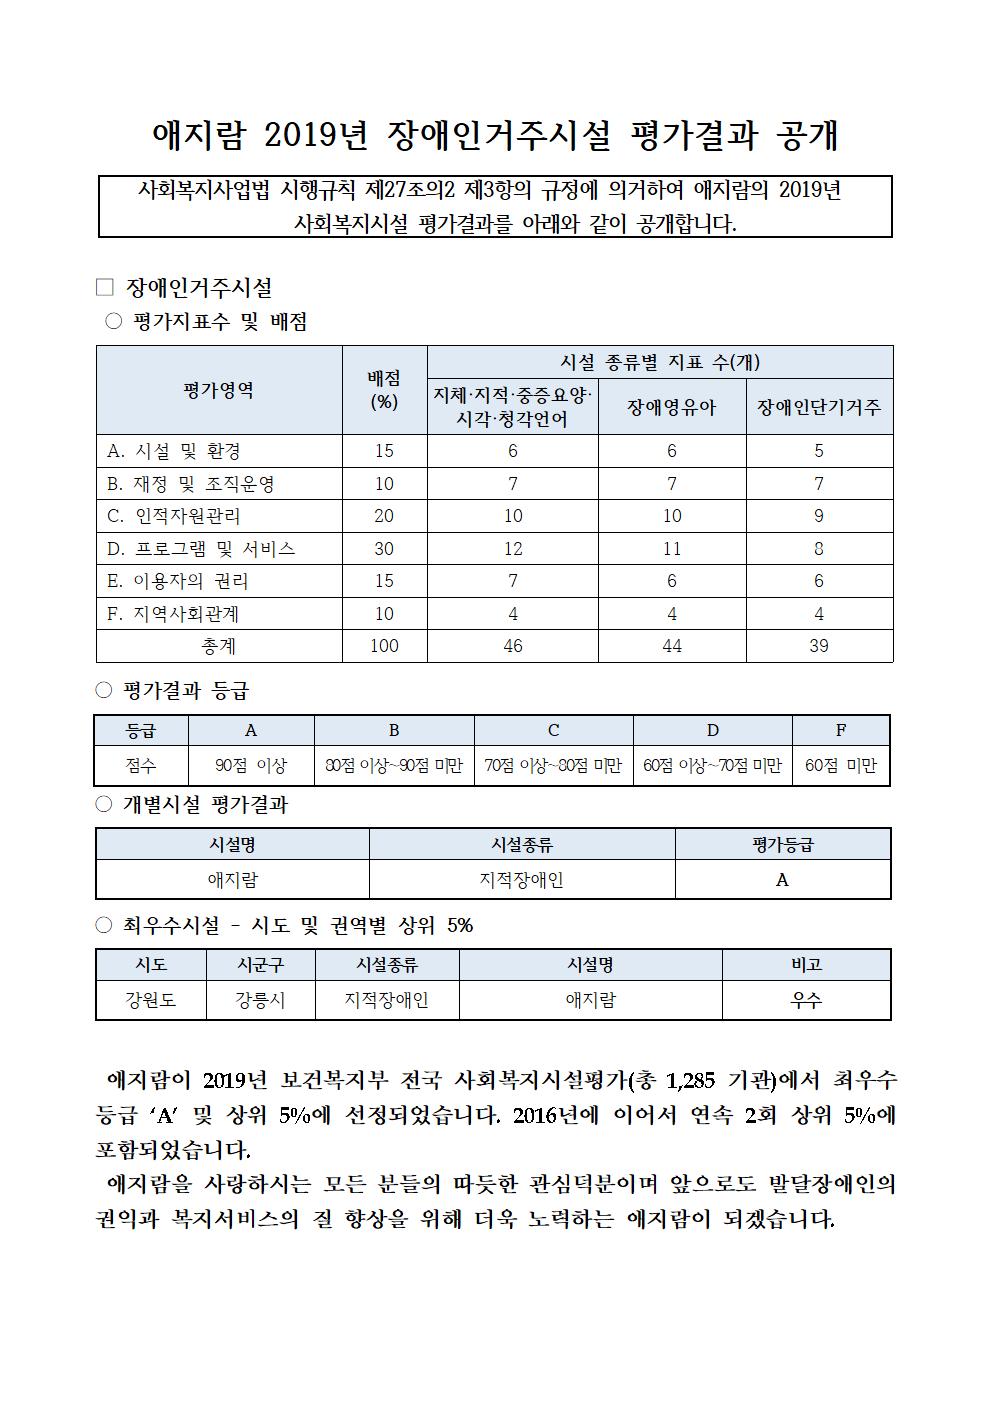 애지람 2019년 장애인거주시설 평가결과 공개001.jpg